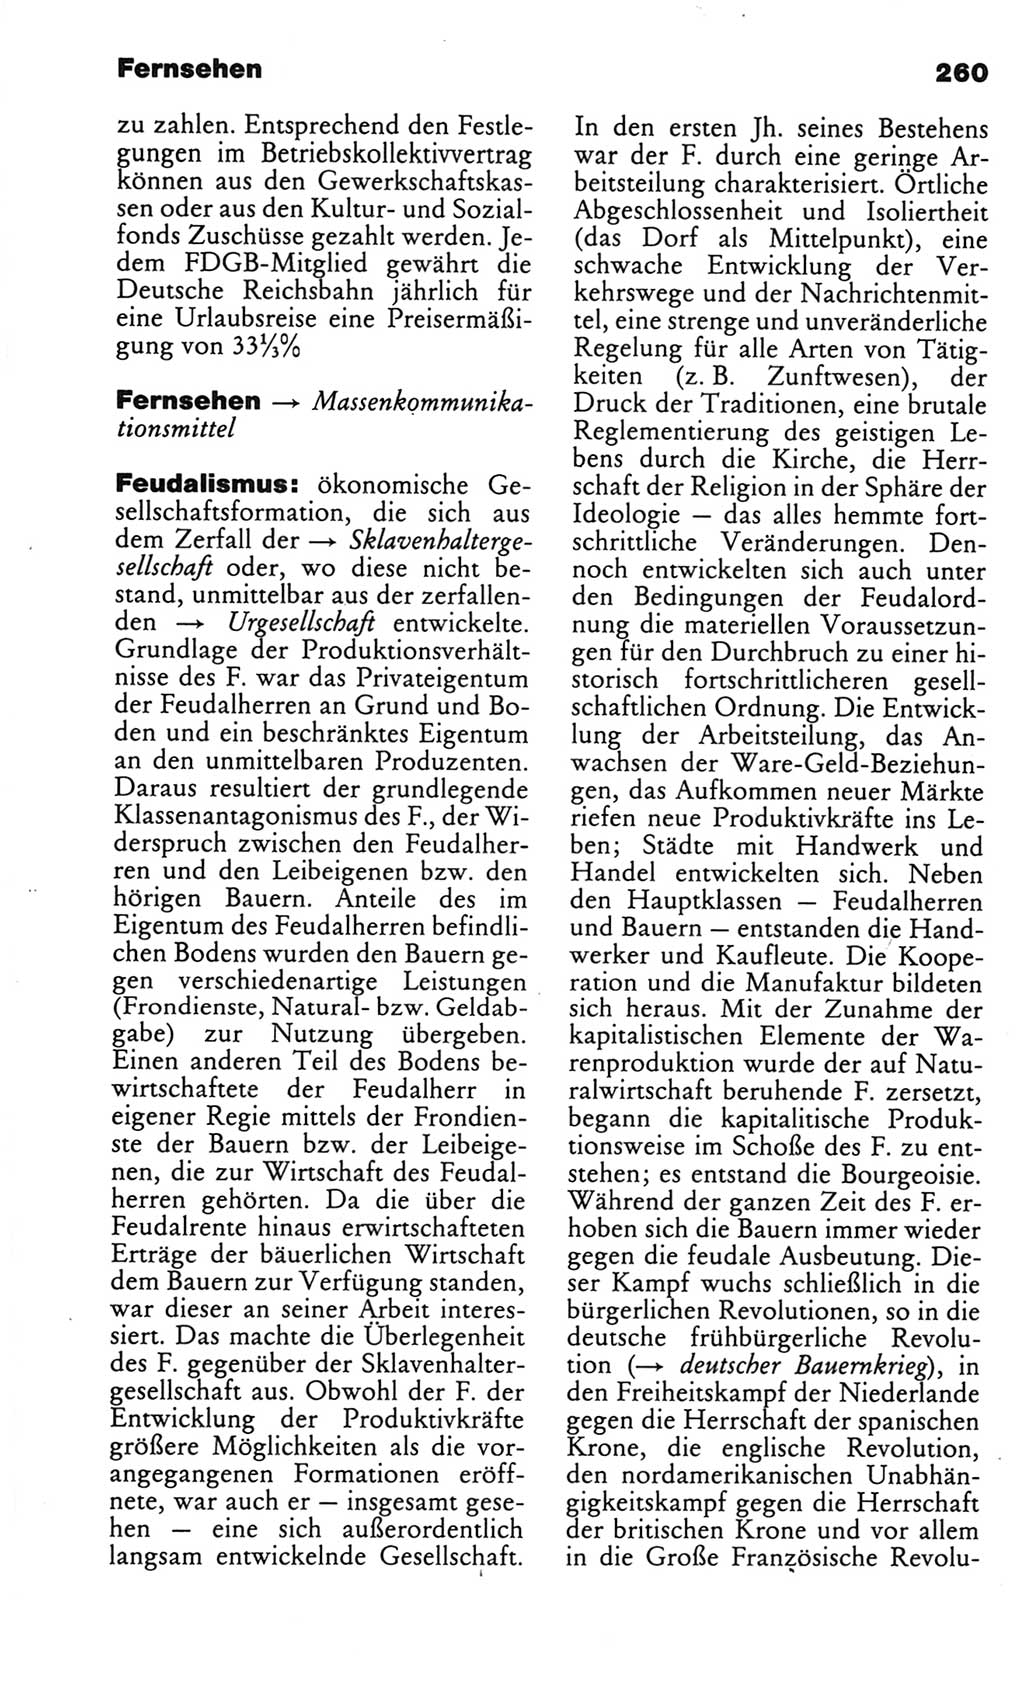 Kleines politisches Wörterbuch [Deutsche Demokratische Republik (DDR)] 1986, Seite 260 (Kl. pol. Wb. DDR 1986, S. 260)